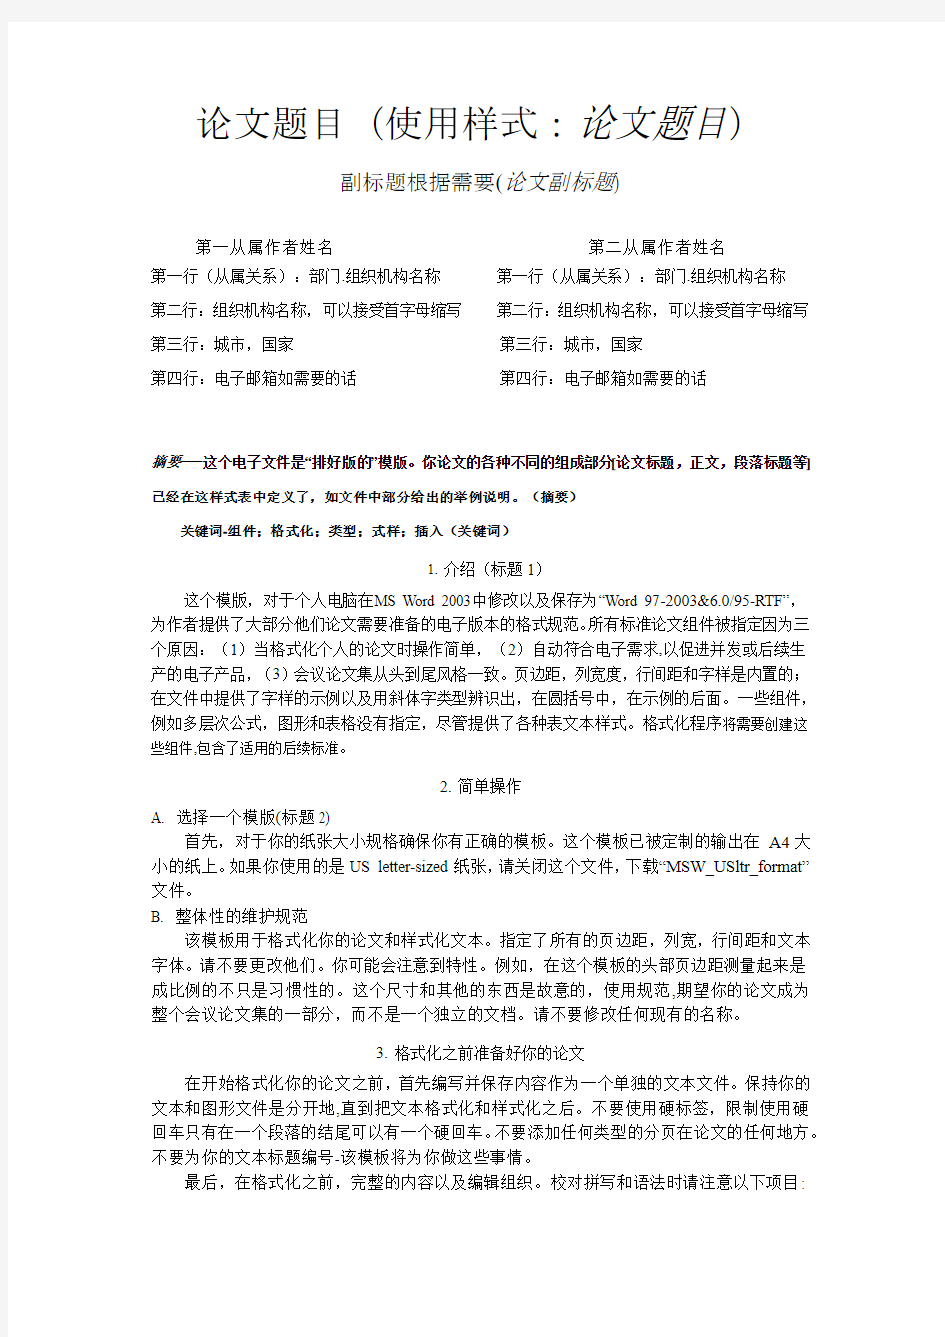 EI 会议论文格式模版(中文)